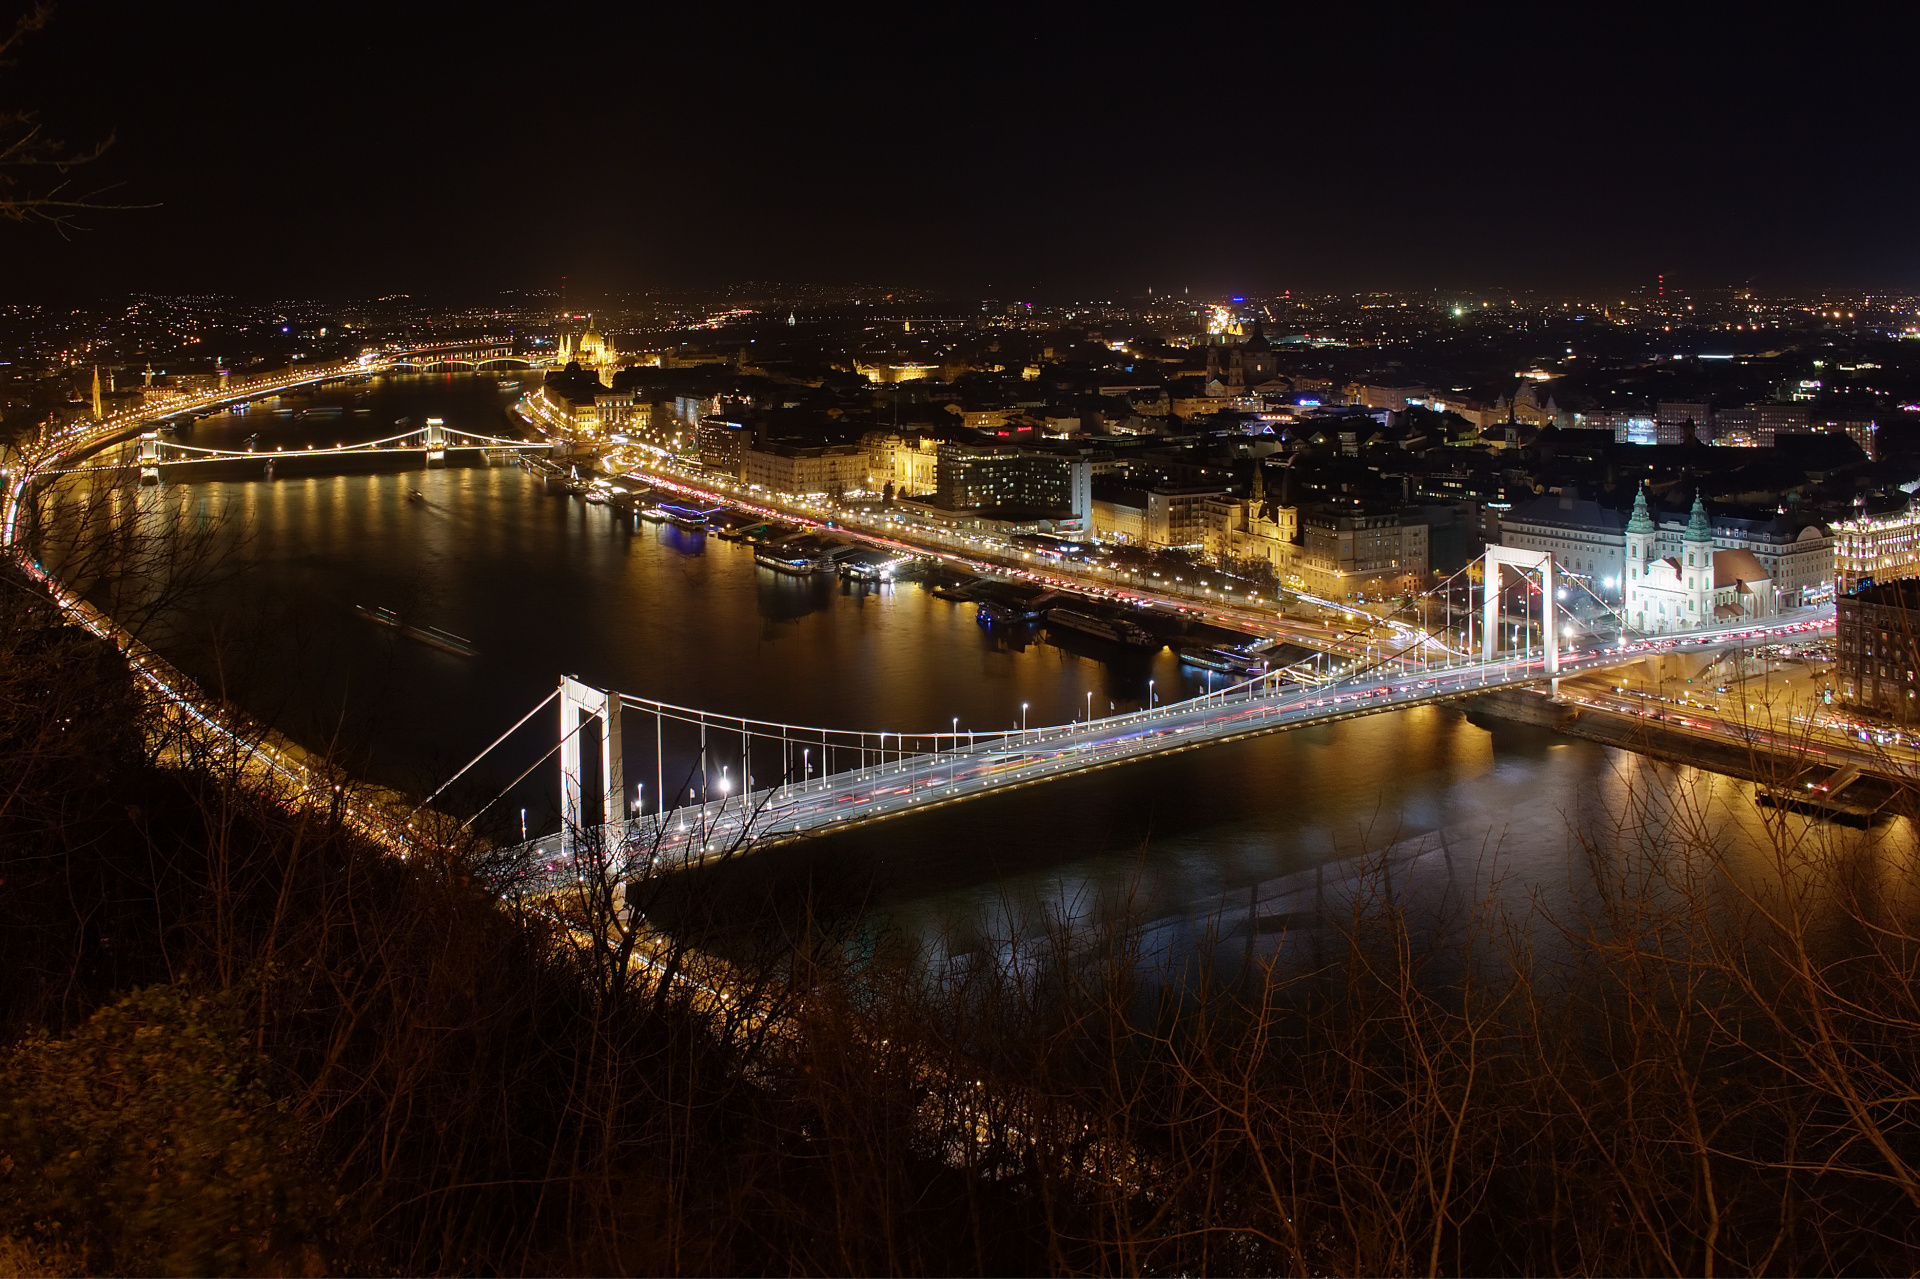 Erzsébet híd - Most Elżbiety i Peszt ze Wzgórza Gellerta (Podróże » Budapeszt » Budapeszt w nocy)